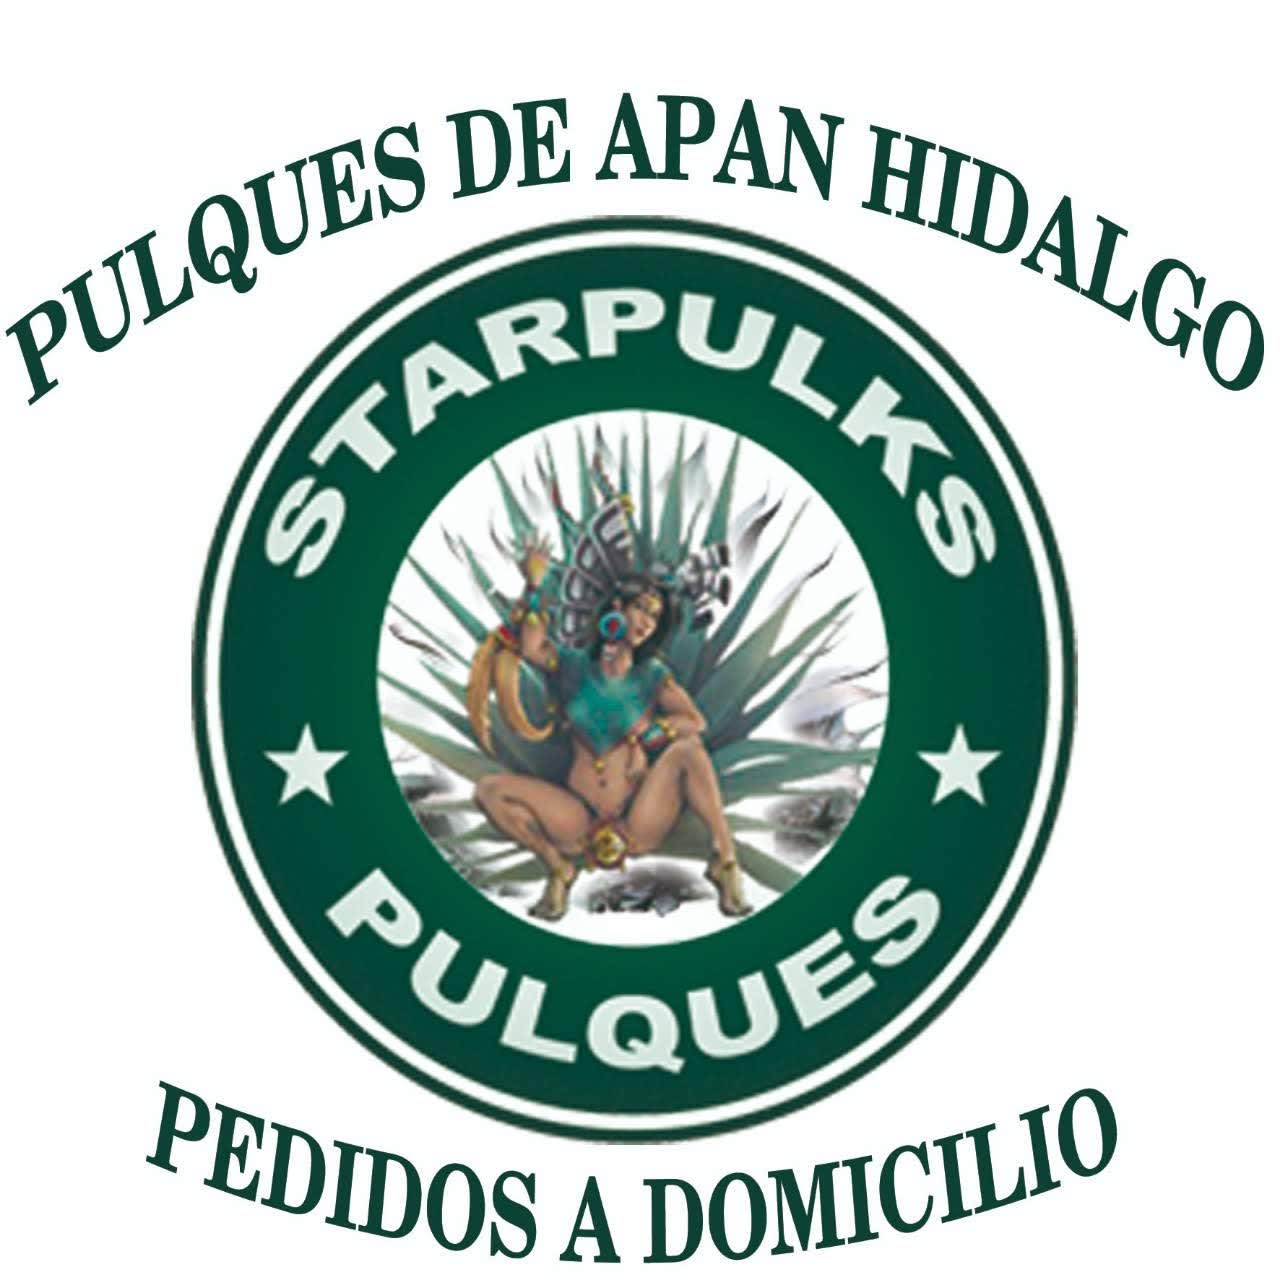 Pulqueria Hidalgo